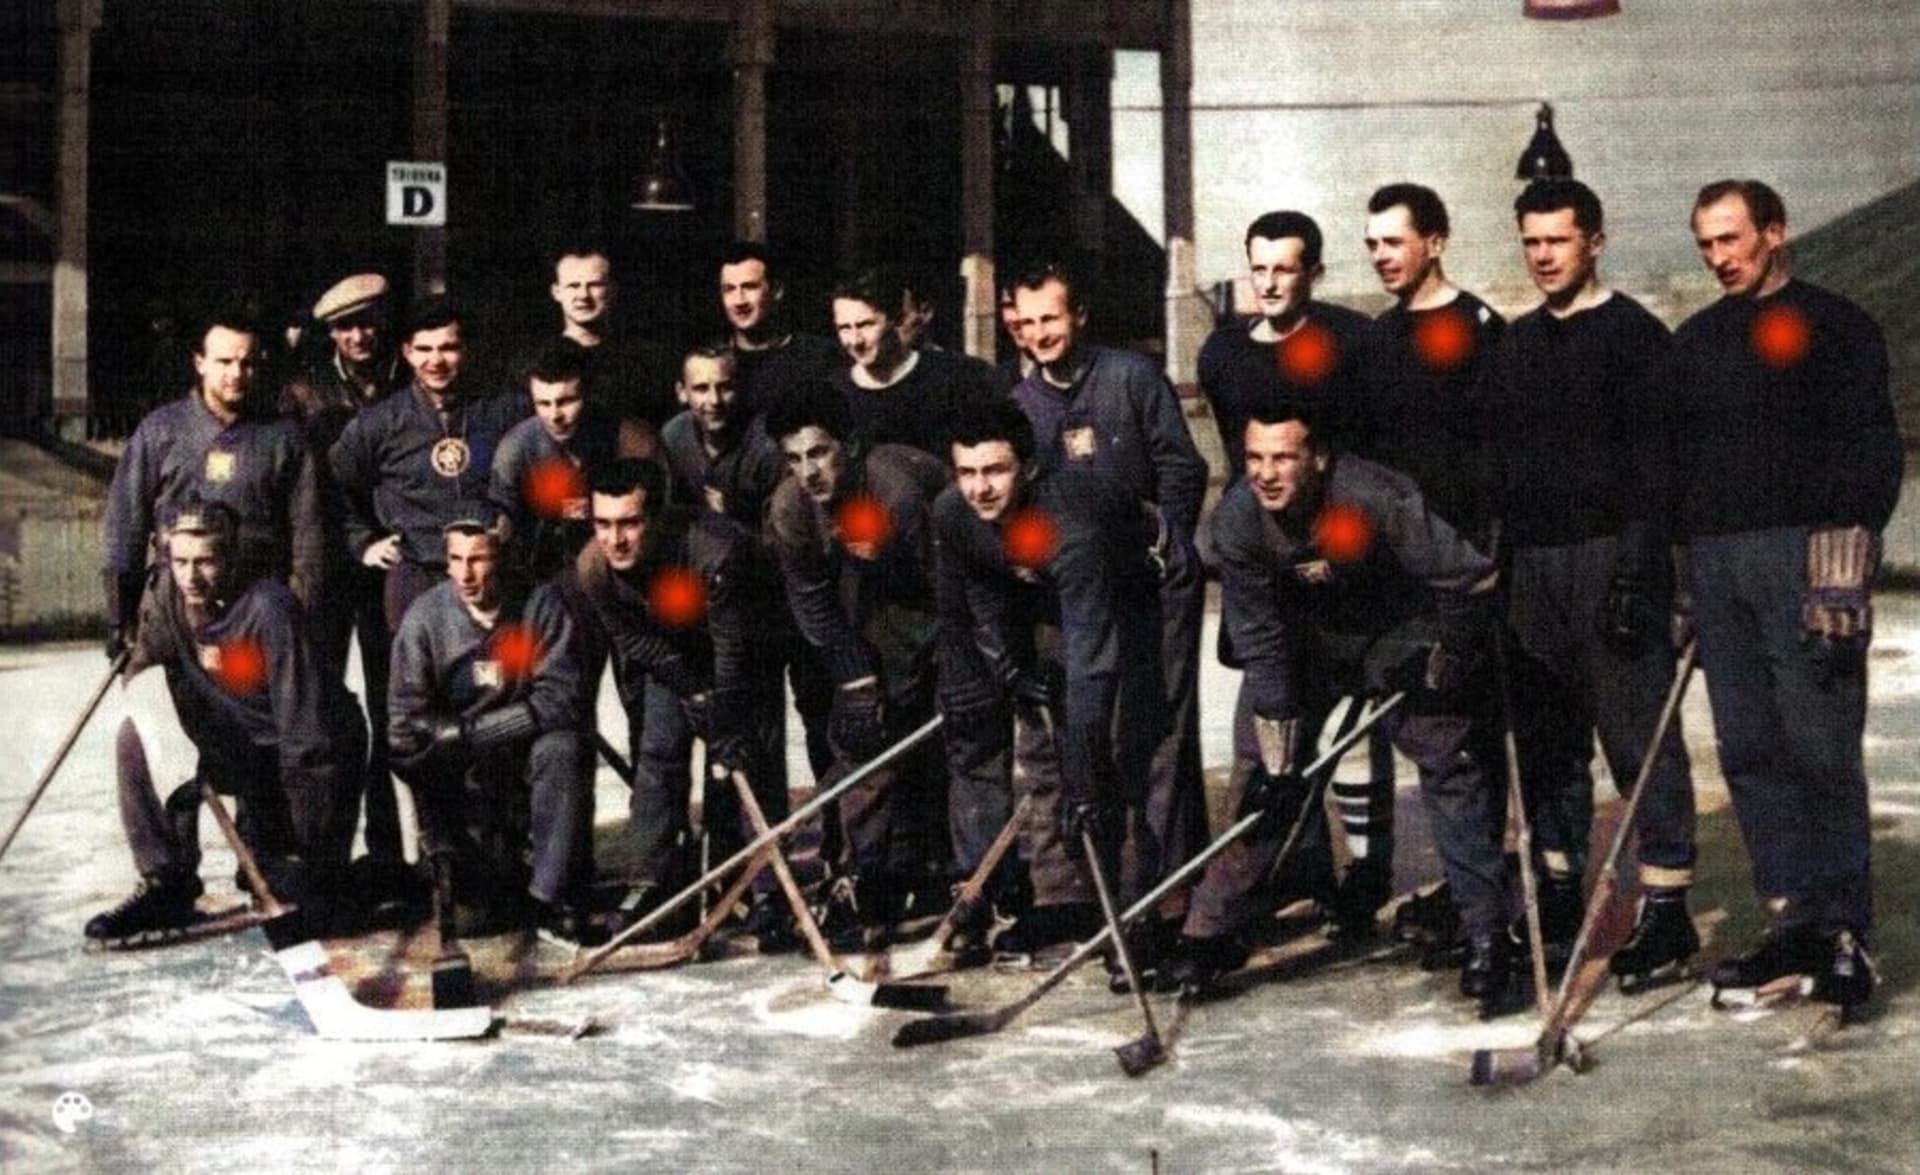 Dne 7. října 1950 vrcholil vykonstruovaný proces s československými hokejisty. Ti posléze zamířili na základě rozhodnutí komunistického režimu do uranových dolů.